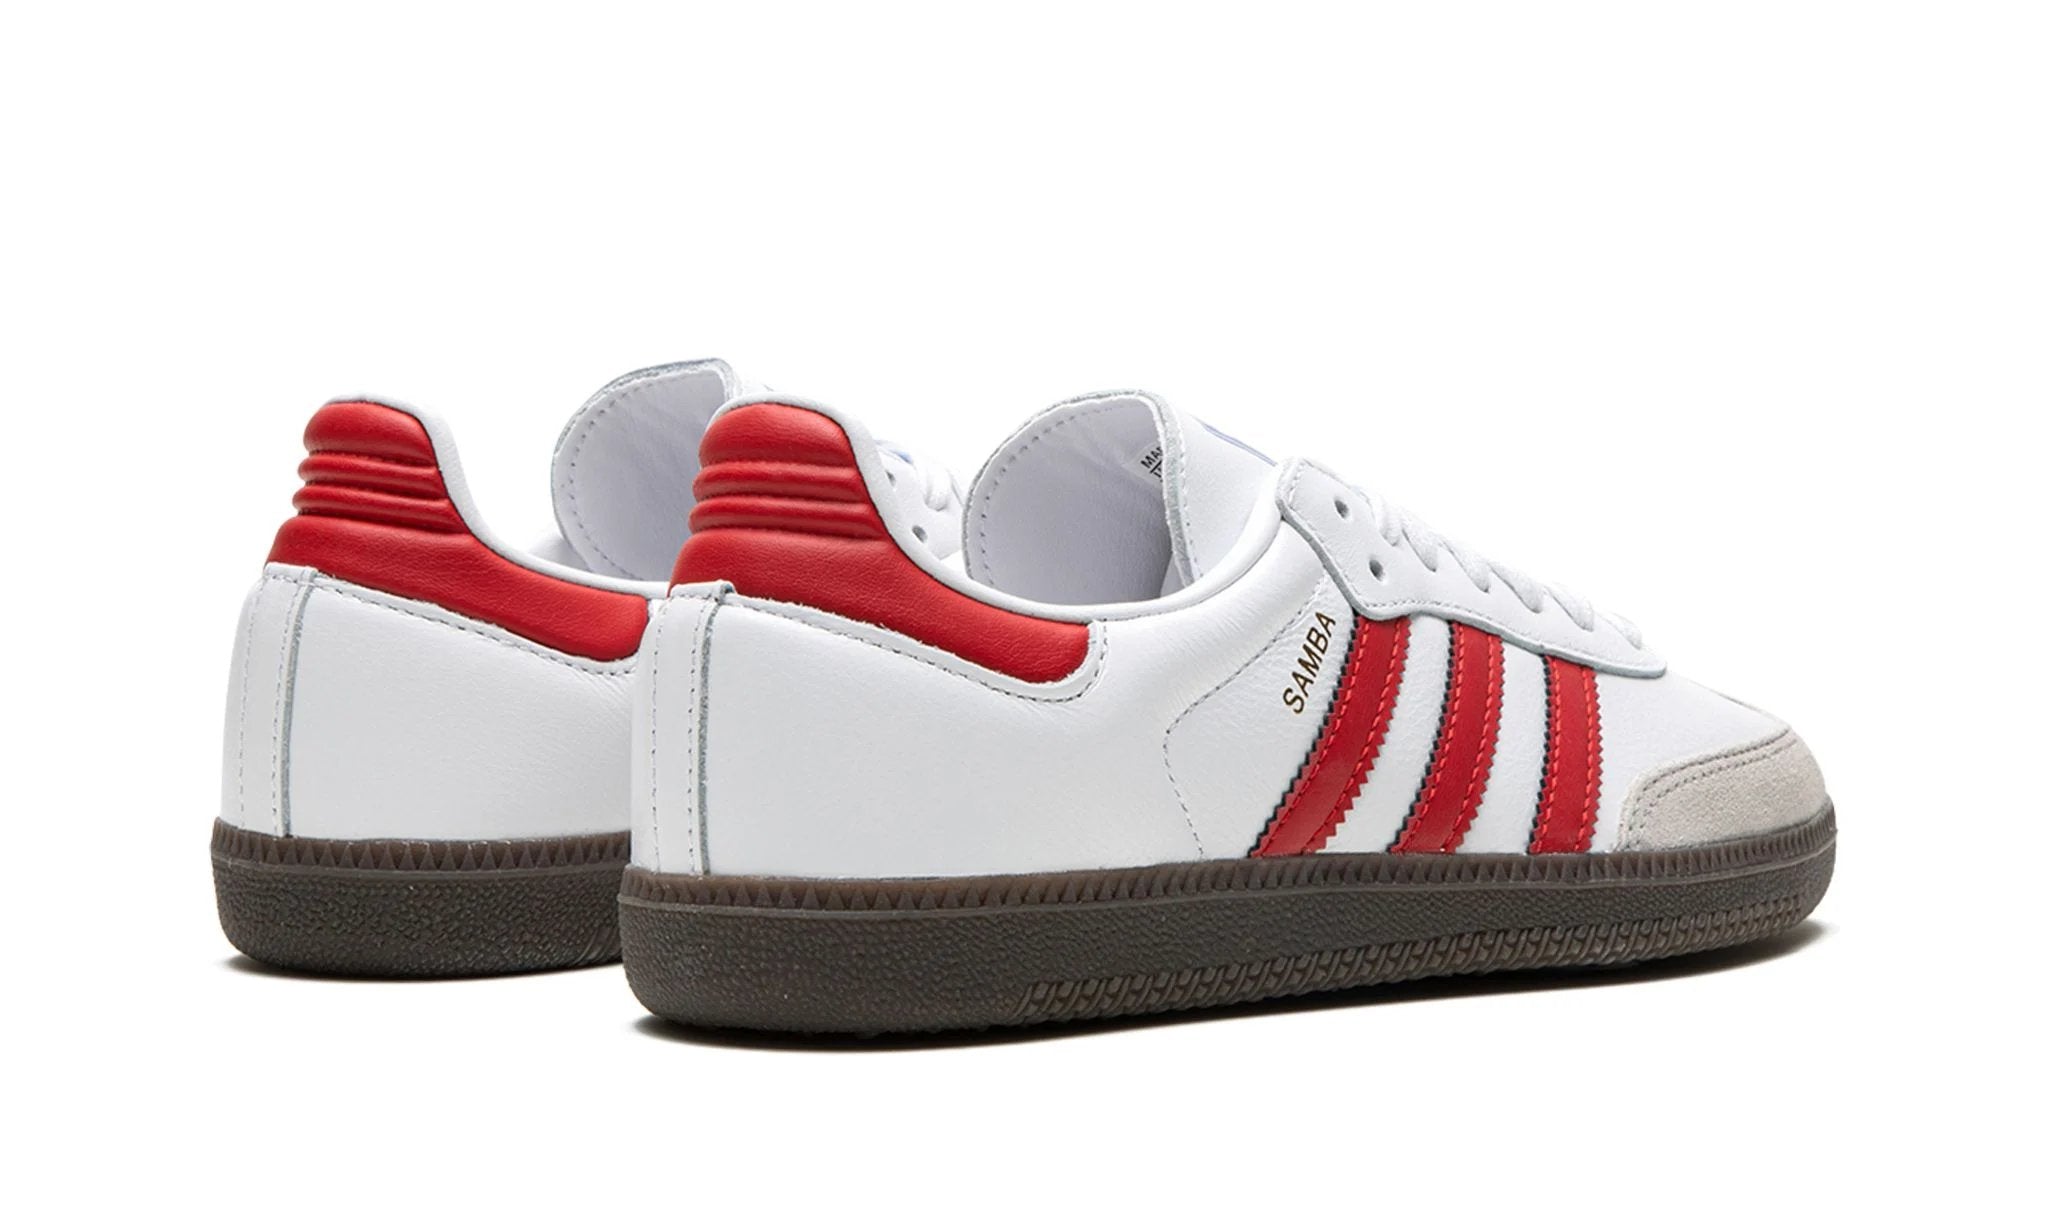 adidas Samba OG White Better Scarlet - IG1025 - Sneakers